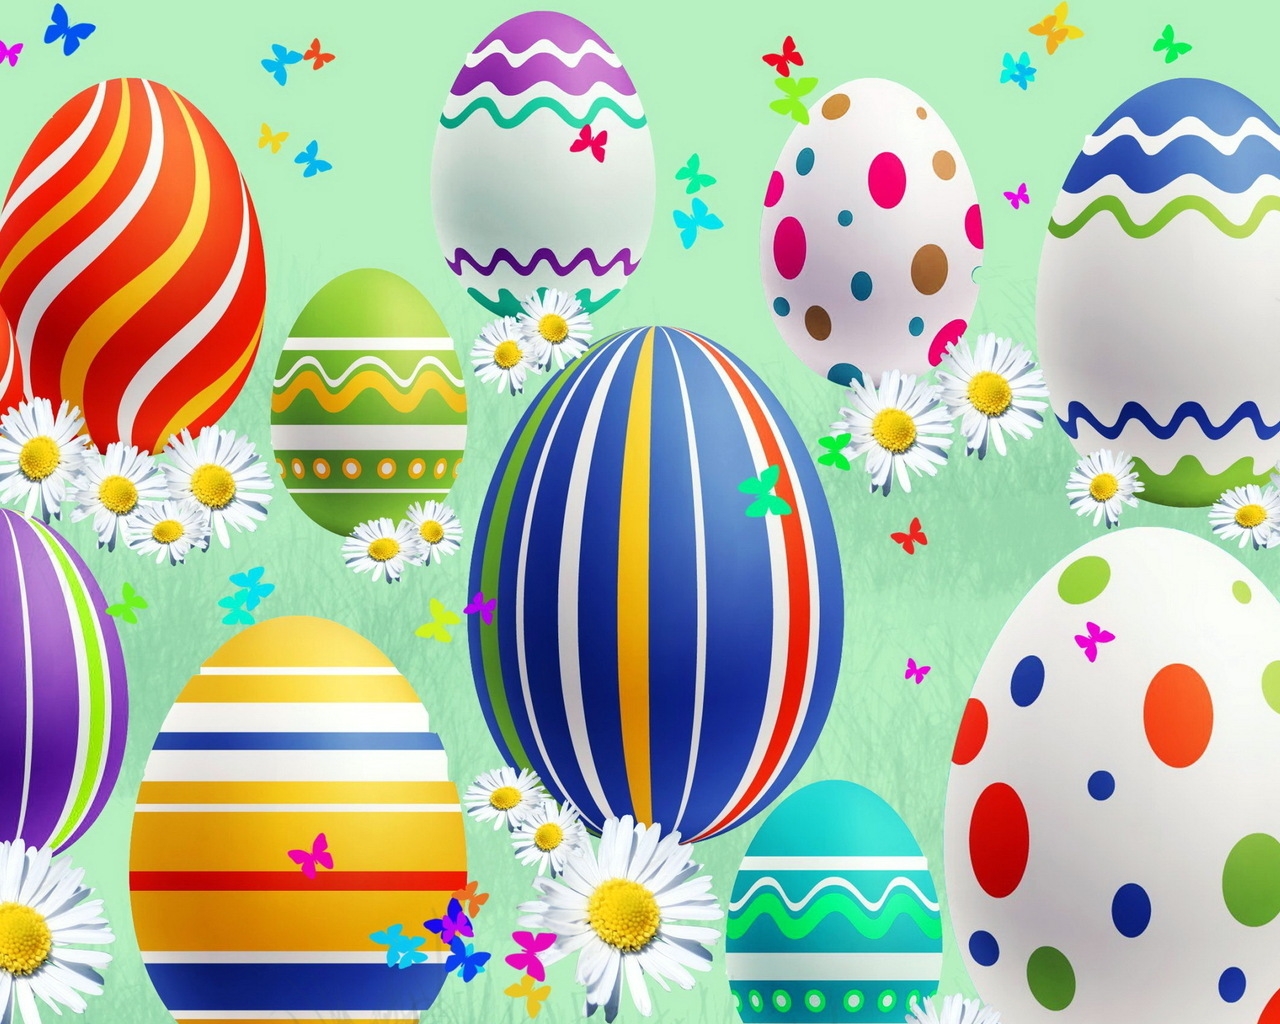 Lovely Easter Eggs for 1280 x 1024 resolution